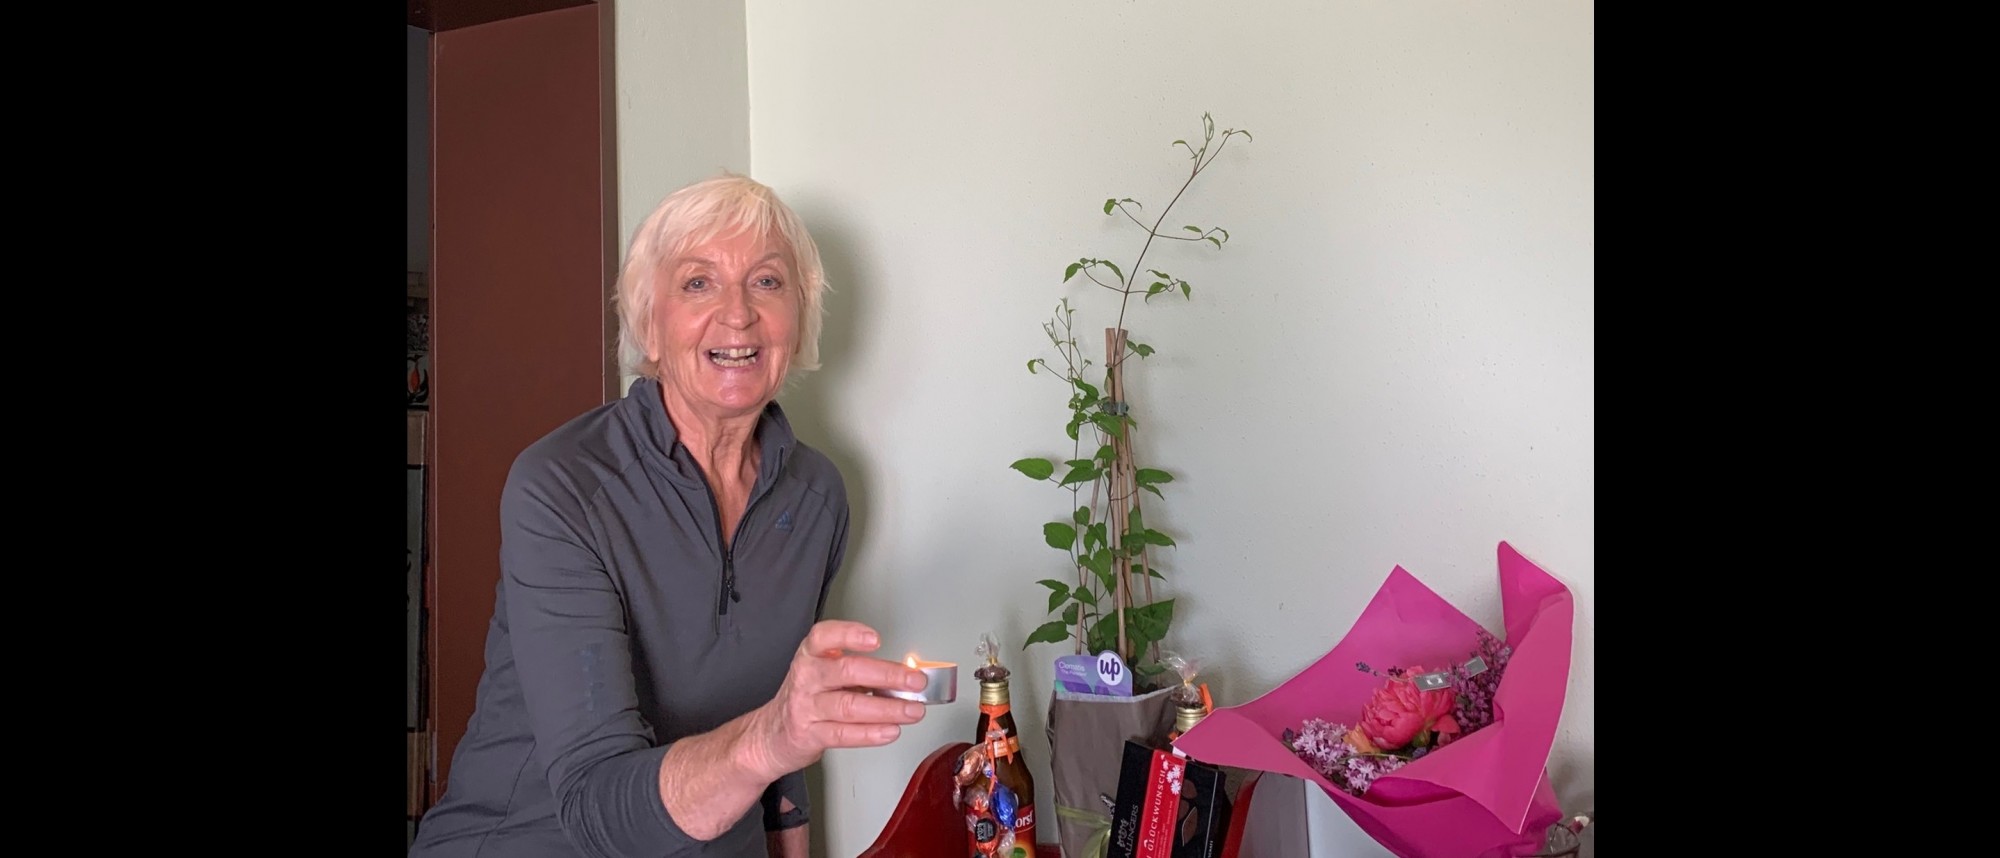 Ältere lachende Dame mit Kerze in der Hand, auf einem Tisch Geschenke und ein Blumenstrauß.